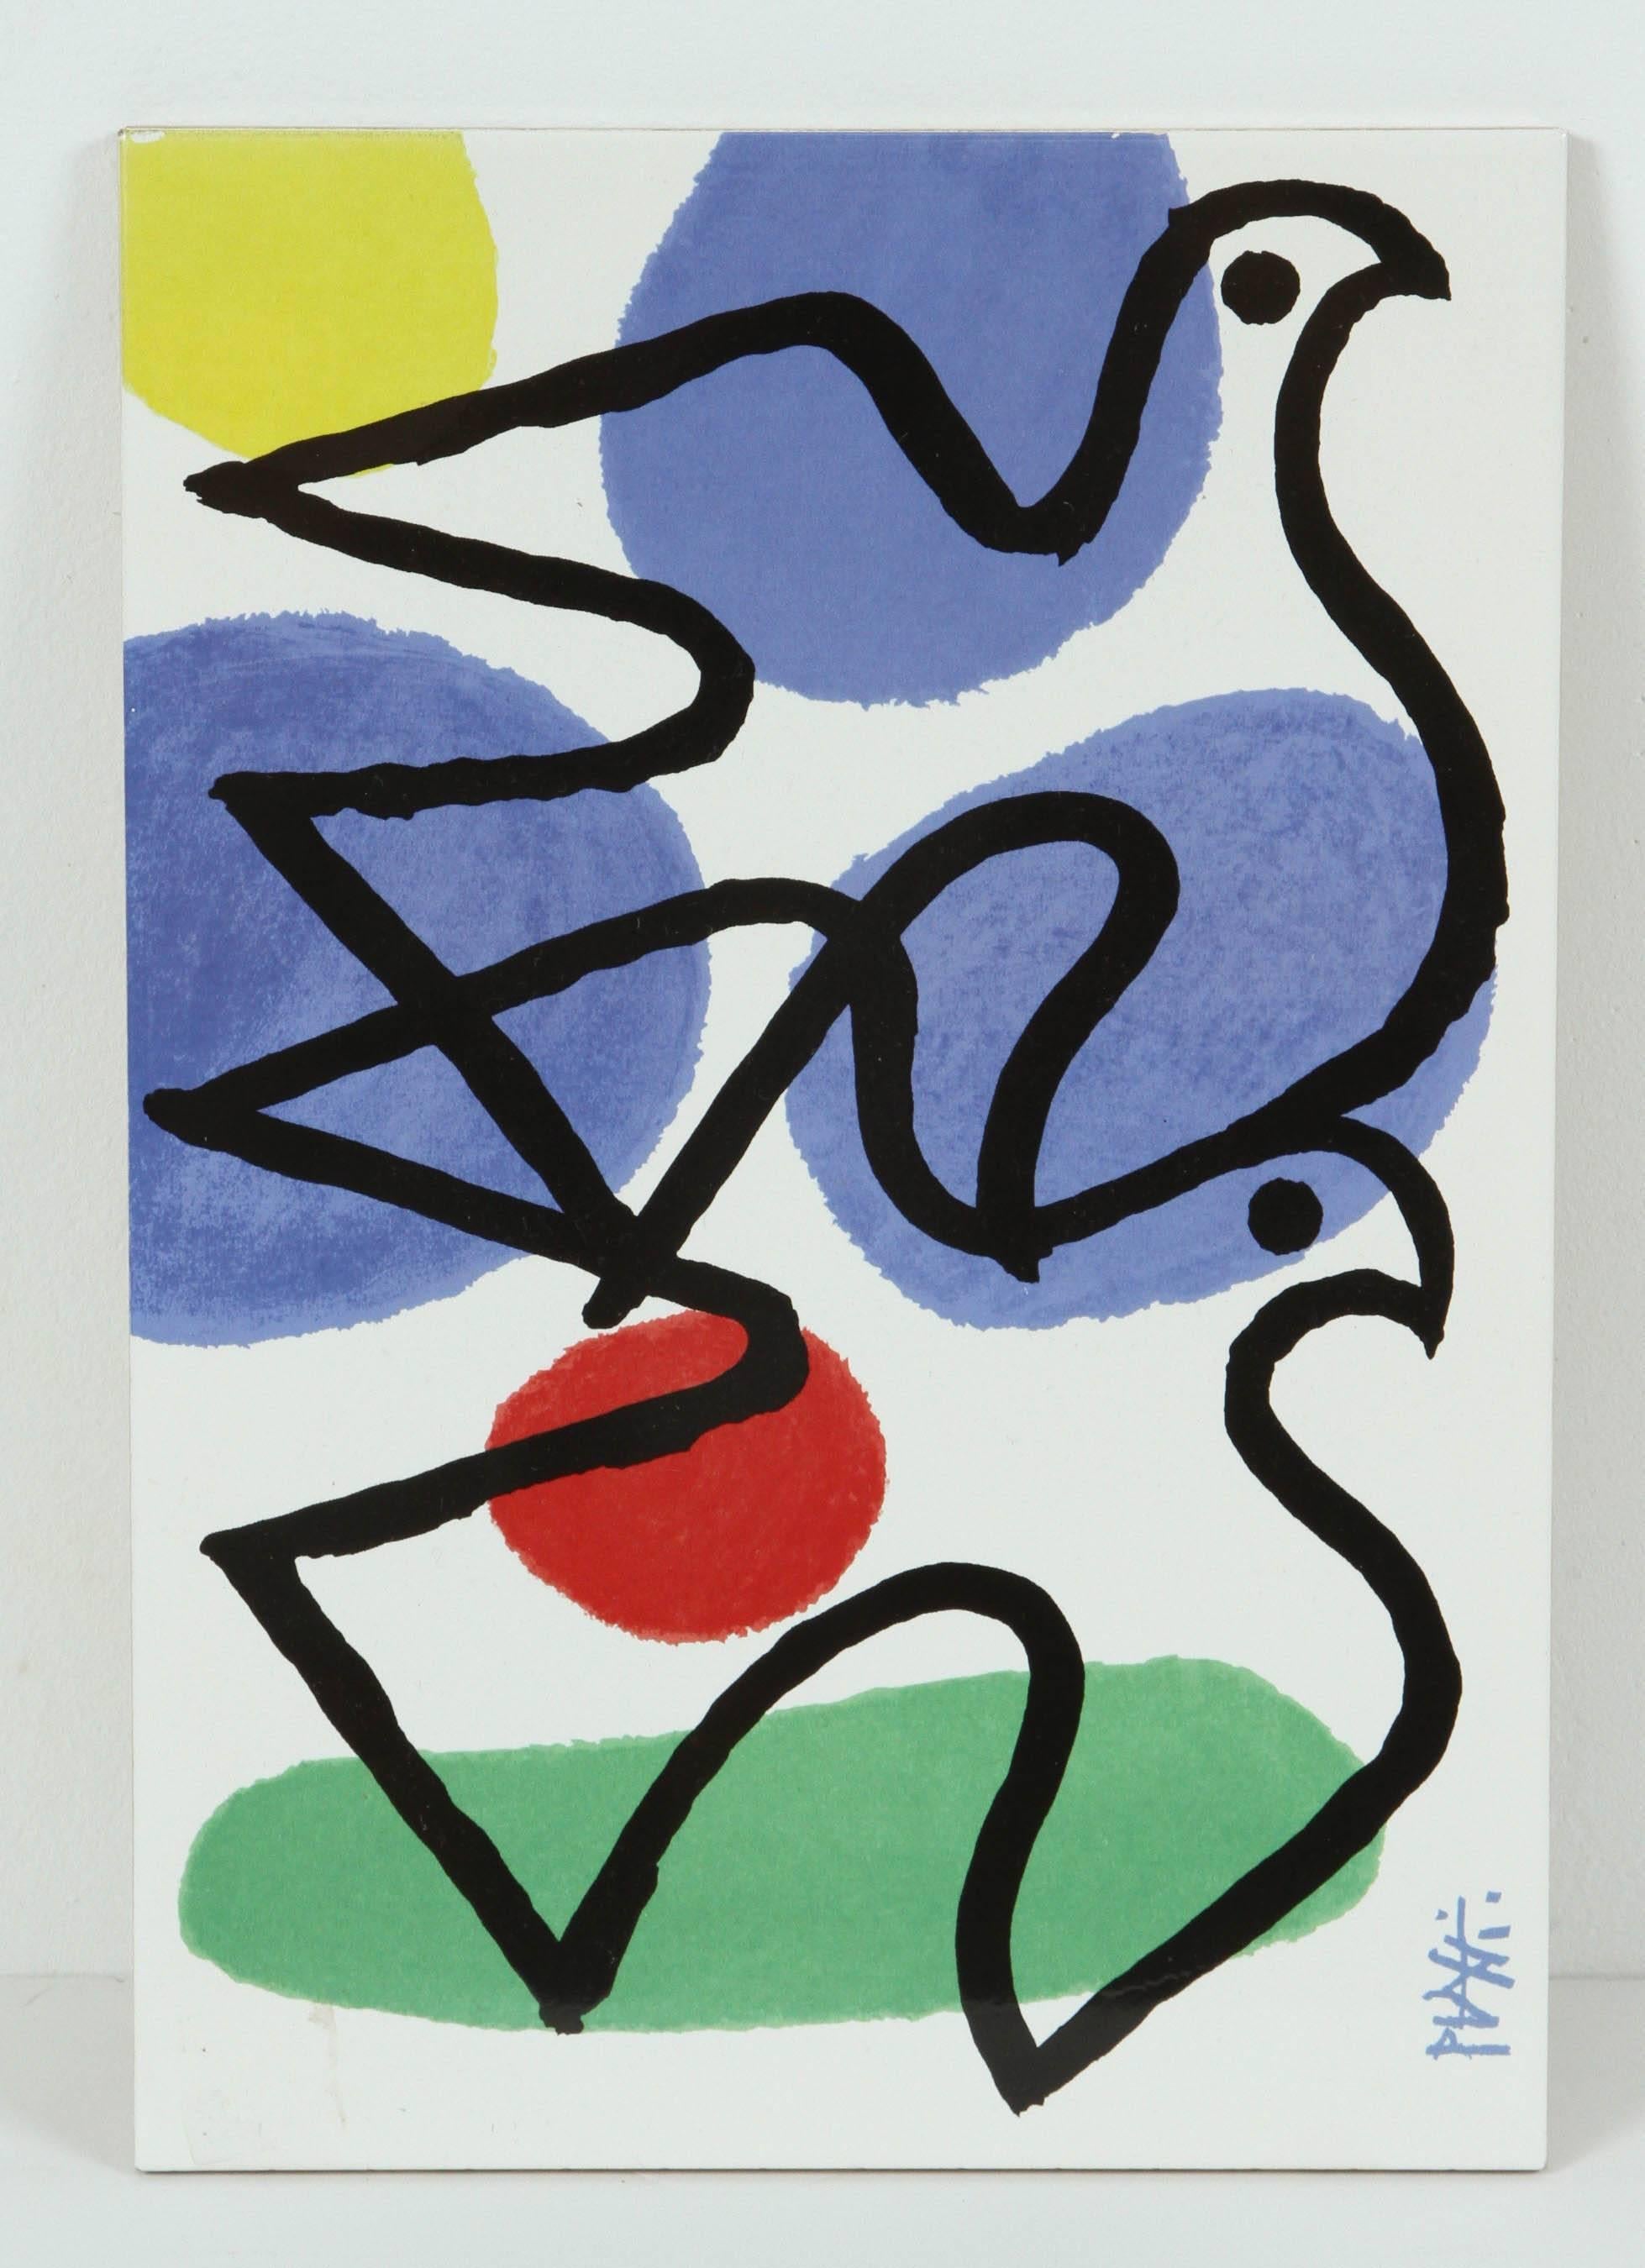 Dreisatz, Feuer, Wind, Erde, original postmoderne Keramikfliesen von Celestino Piatti.
Celestino Piatti (1922-2007) war ein Schweizer Grafiker, Designer, Maler und Buchillustrator.
Jede Fliese ist auf der Vorderseite vom Künstler 